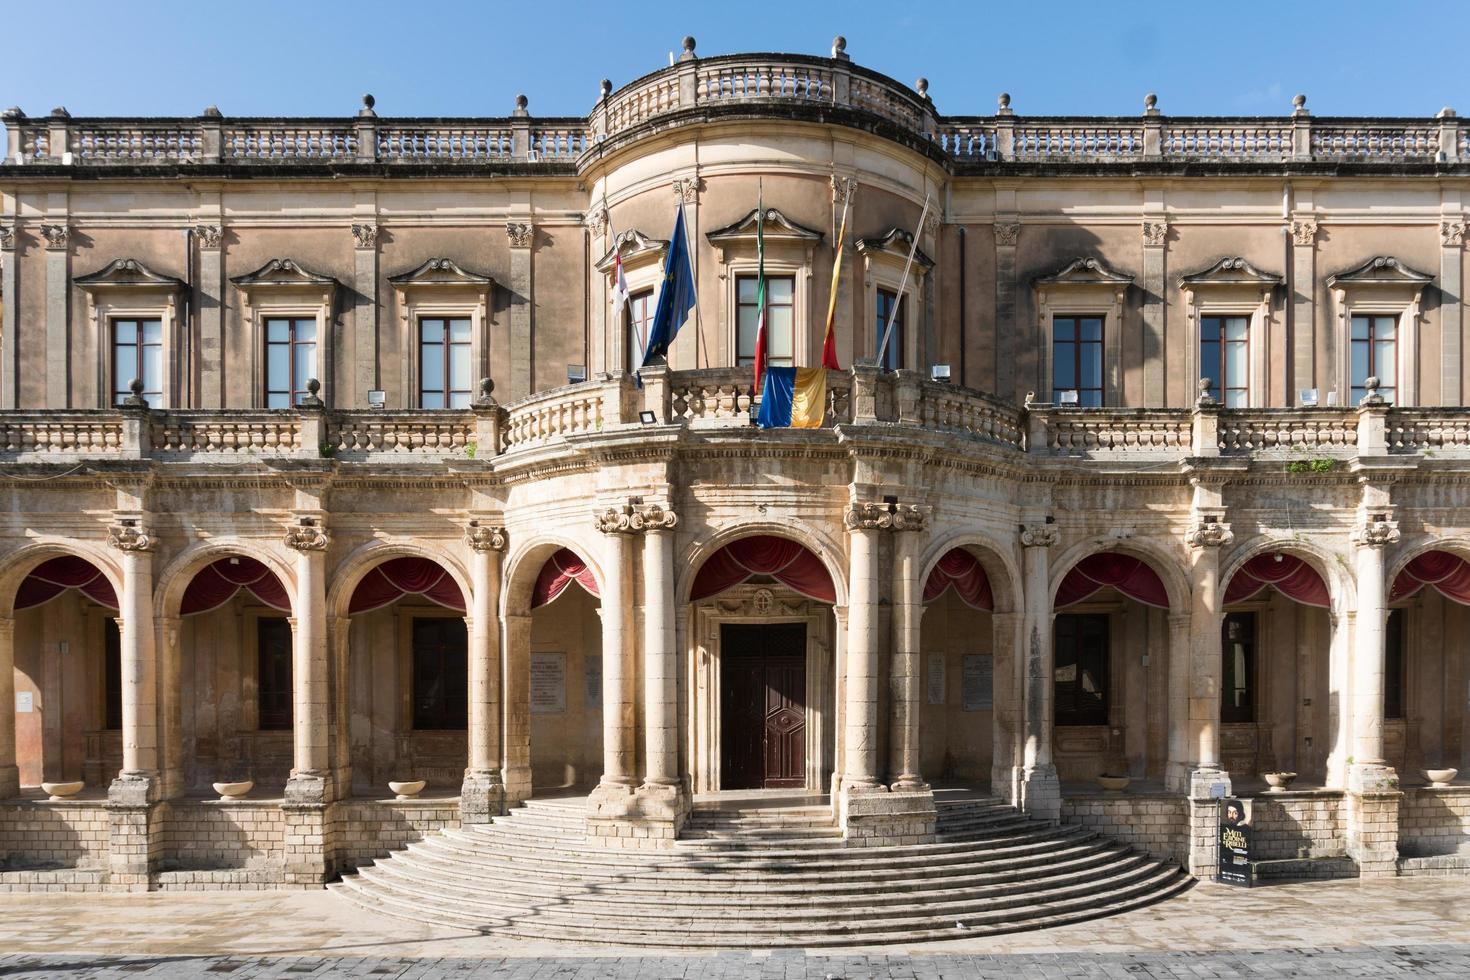 noto,italia-8 de mayo de 2022-vista del palacio ducezio desde lo alto de la escalera de la catedral durante un día soleado foto